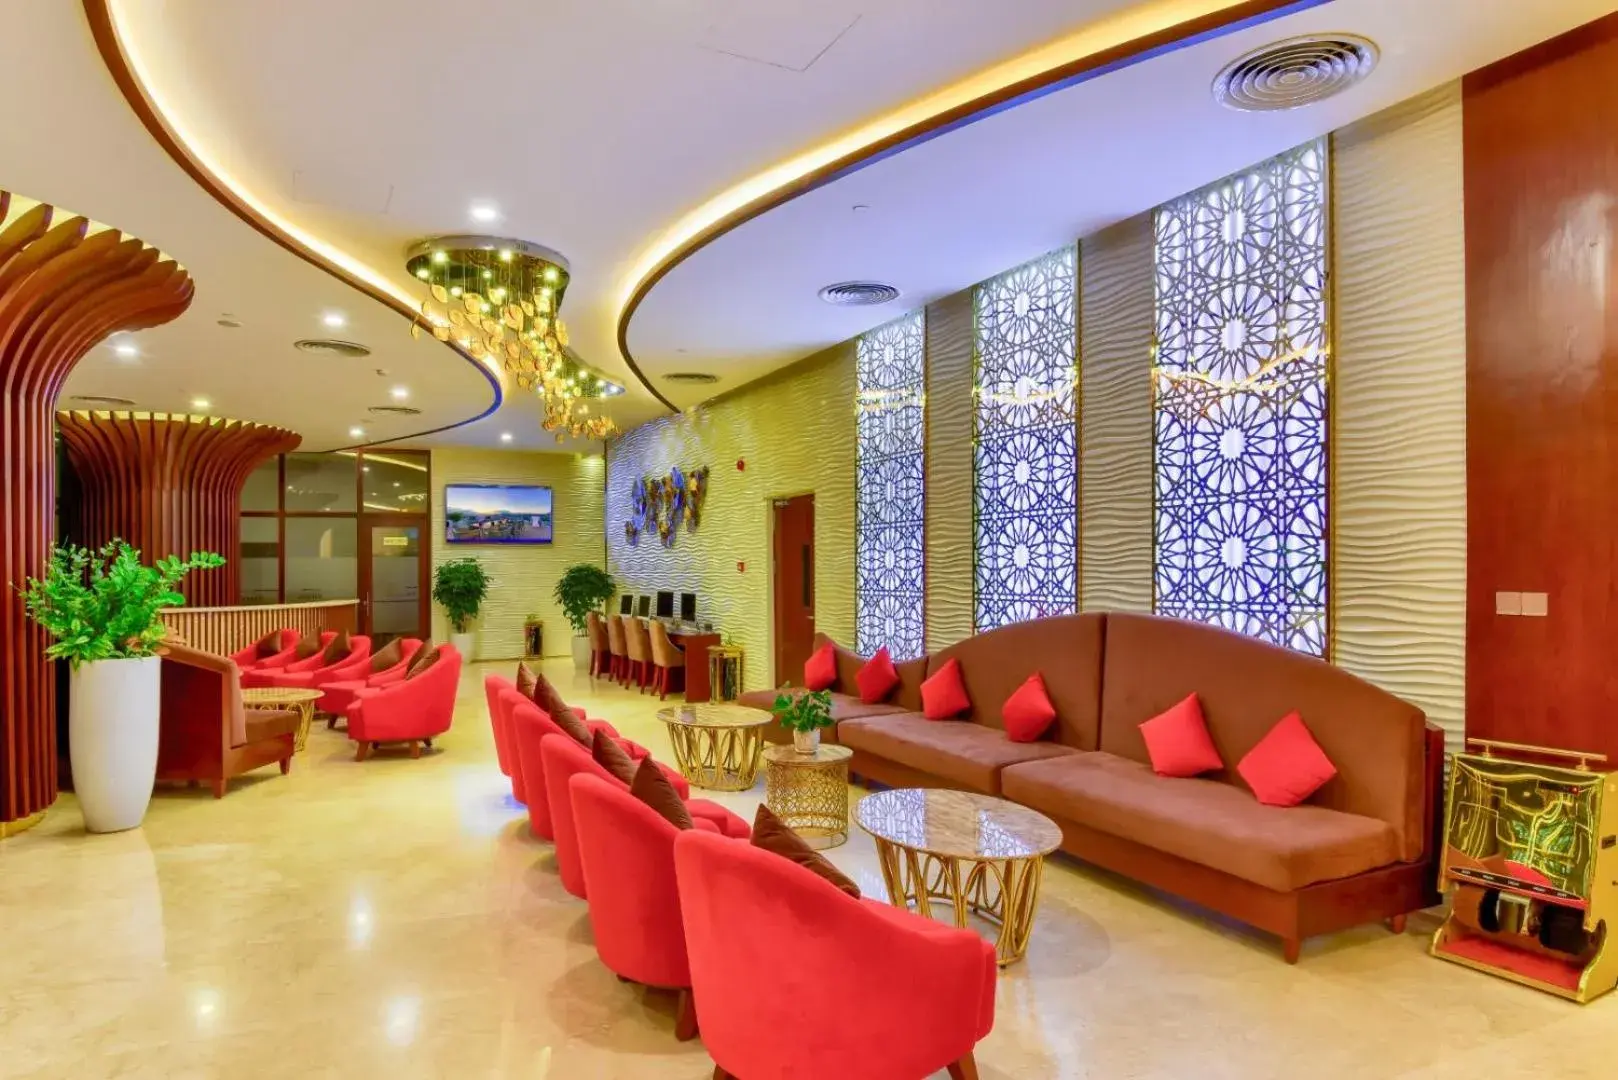 Lobby or reception, Lobby/Reception in Regalia Gold Hotel